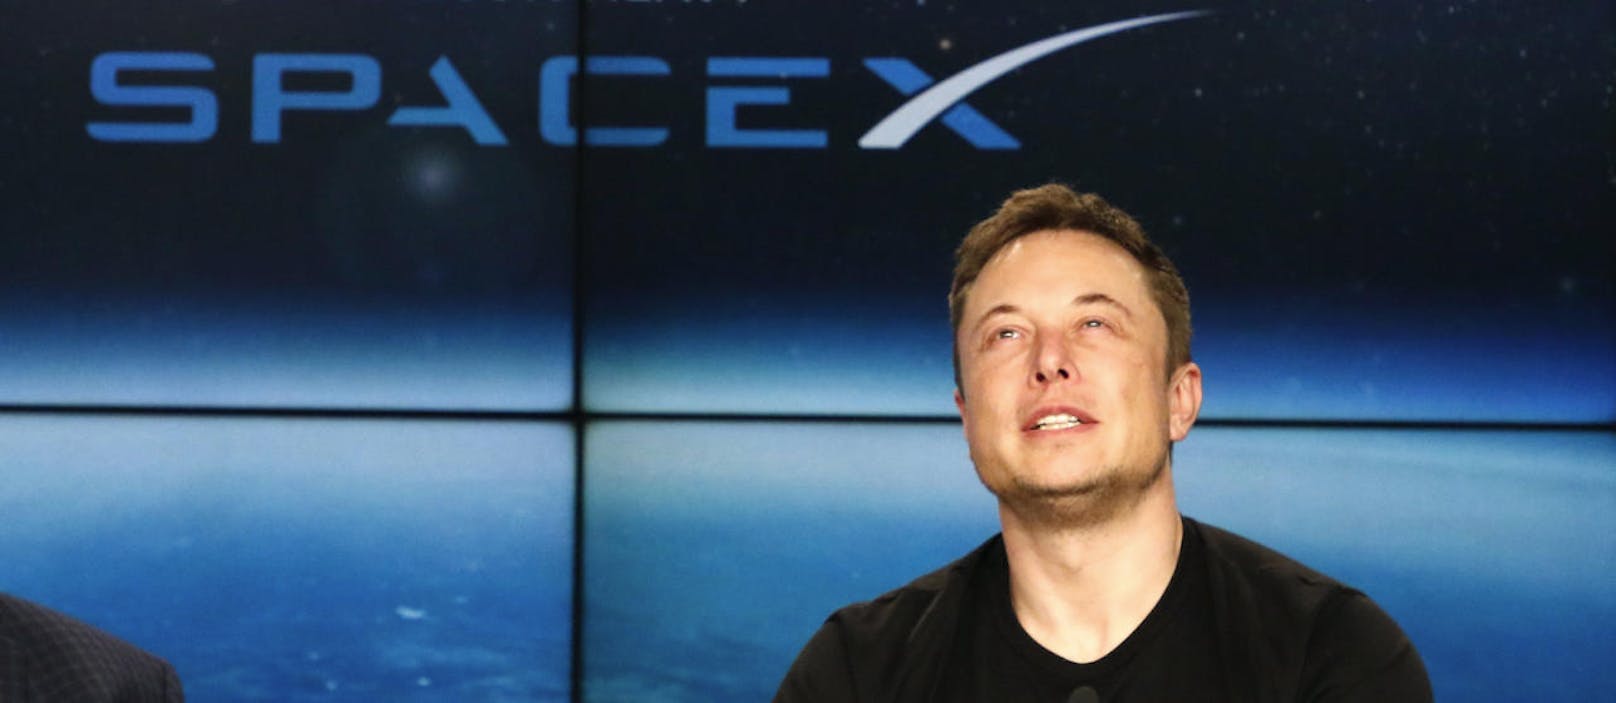 Elon Musk, der Gründer und Geschäftsführer von SpaceX, hat große Pläne. Einer davon ist es, ein Satelliten-Netzwerk aufzubauen, mit dem man überall auf der Welt Zugang zum Internet hat.